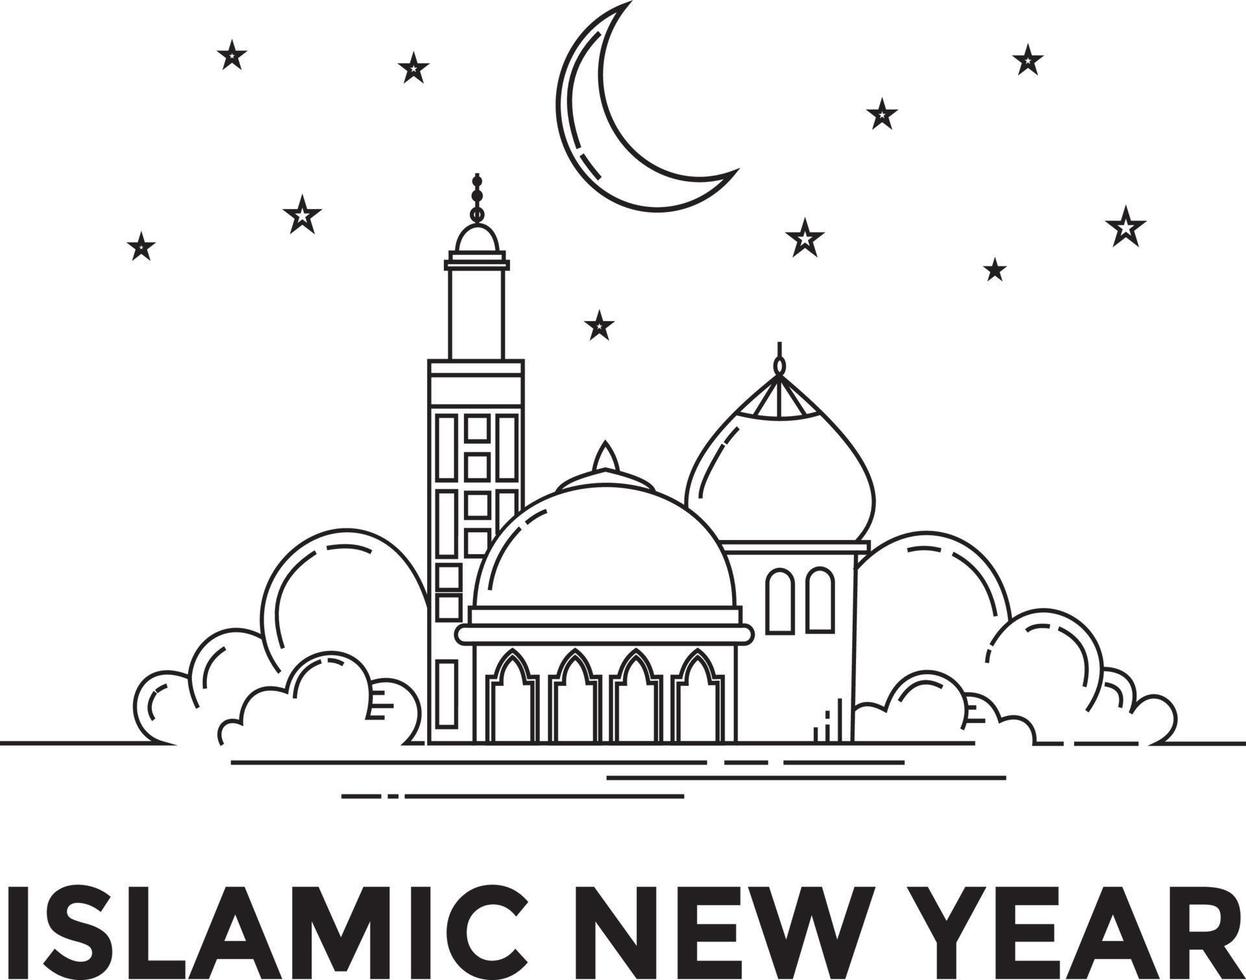 style de conception monoline du nouvel an islamique 2021 vecteur